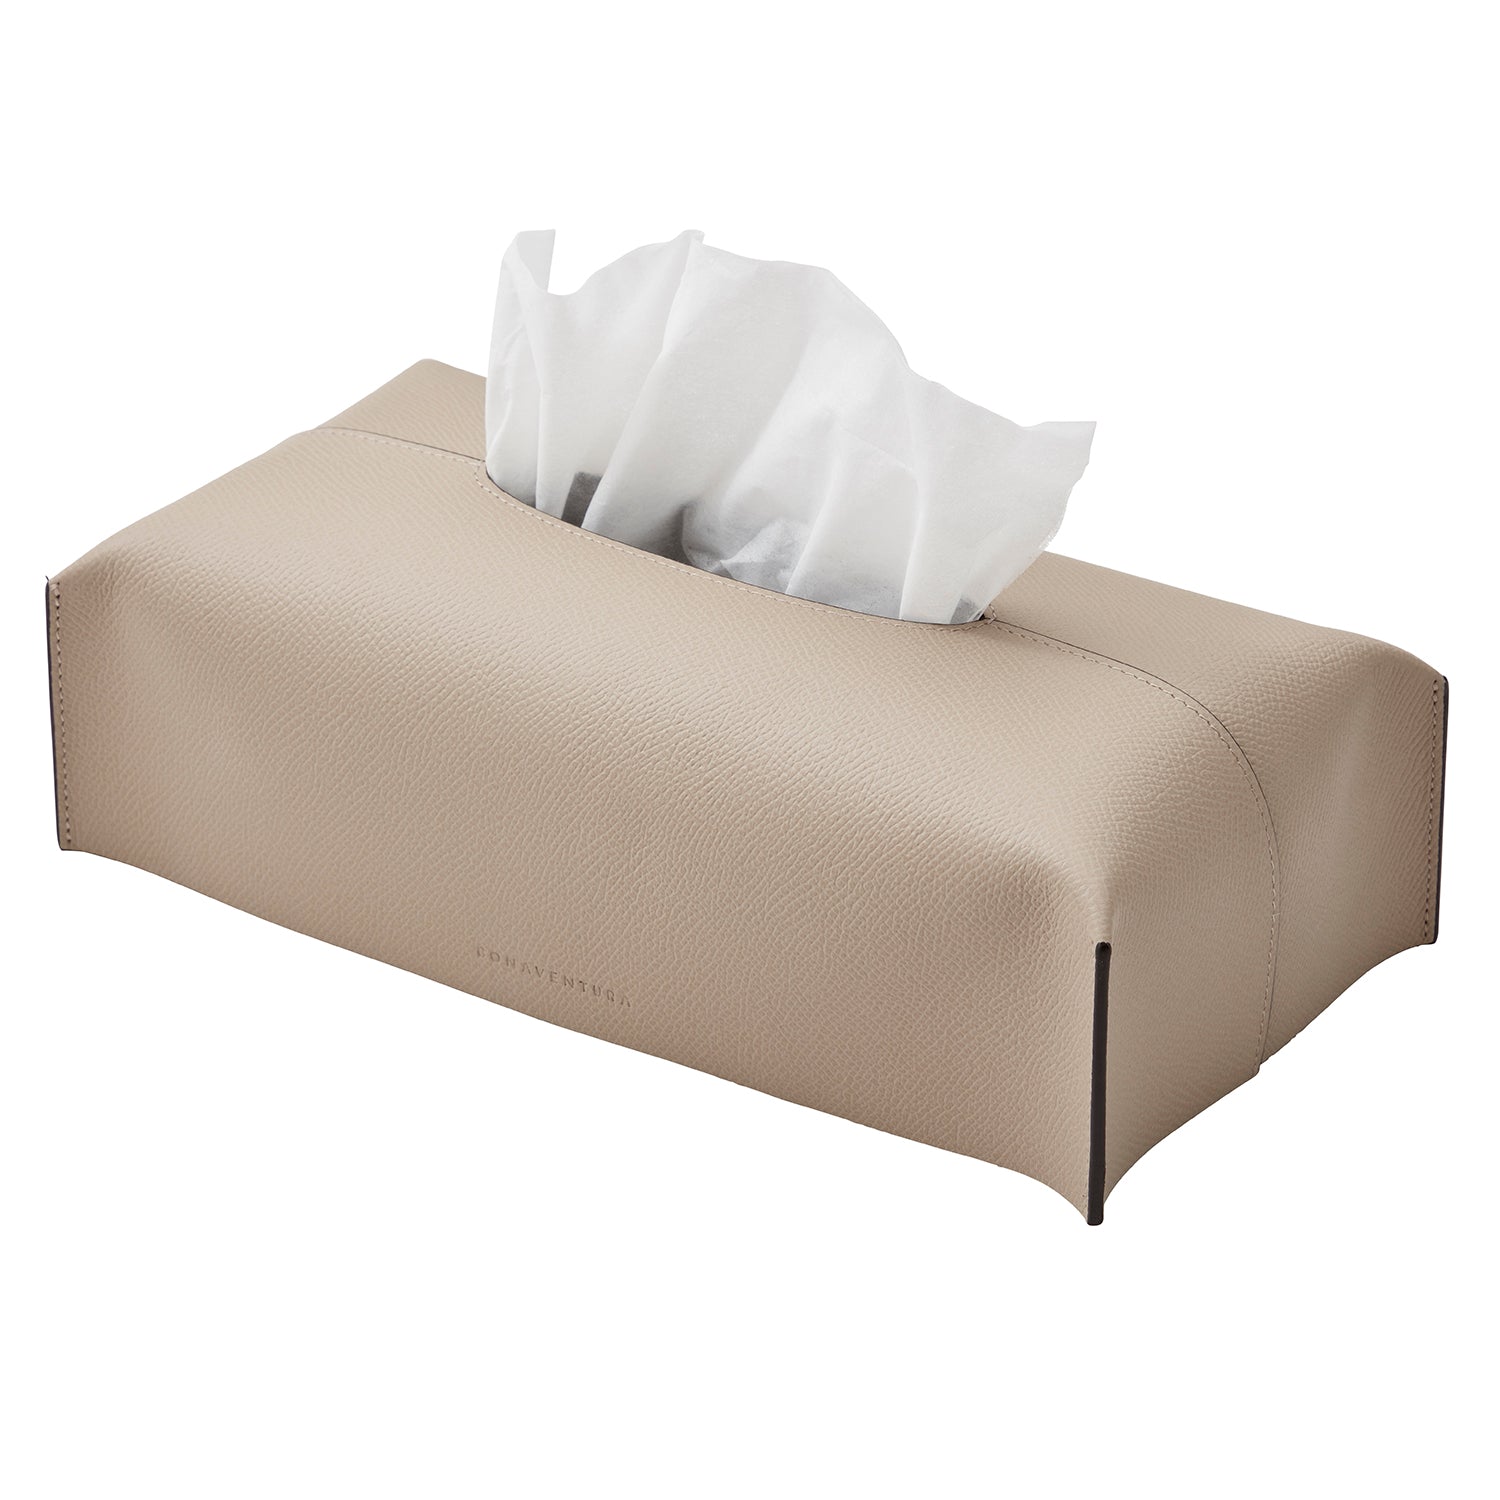 Tissue box cover (Regular Noblesse)